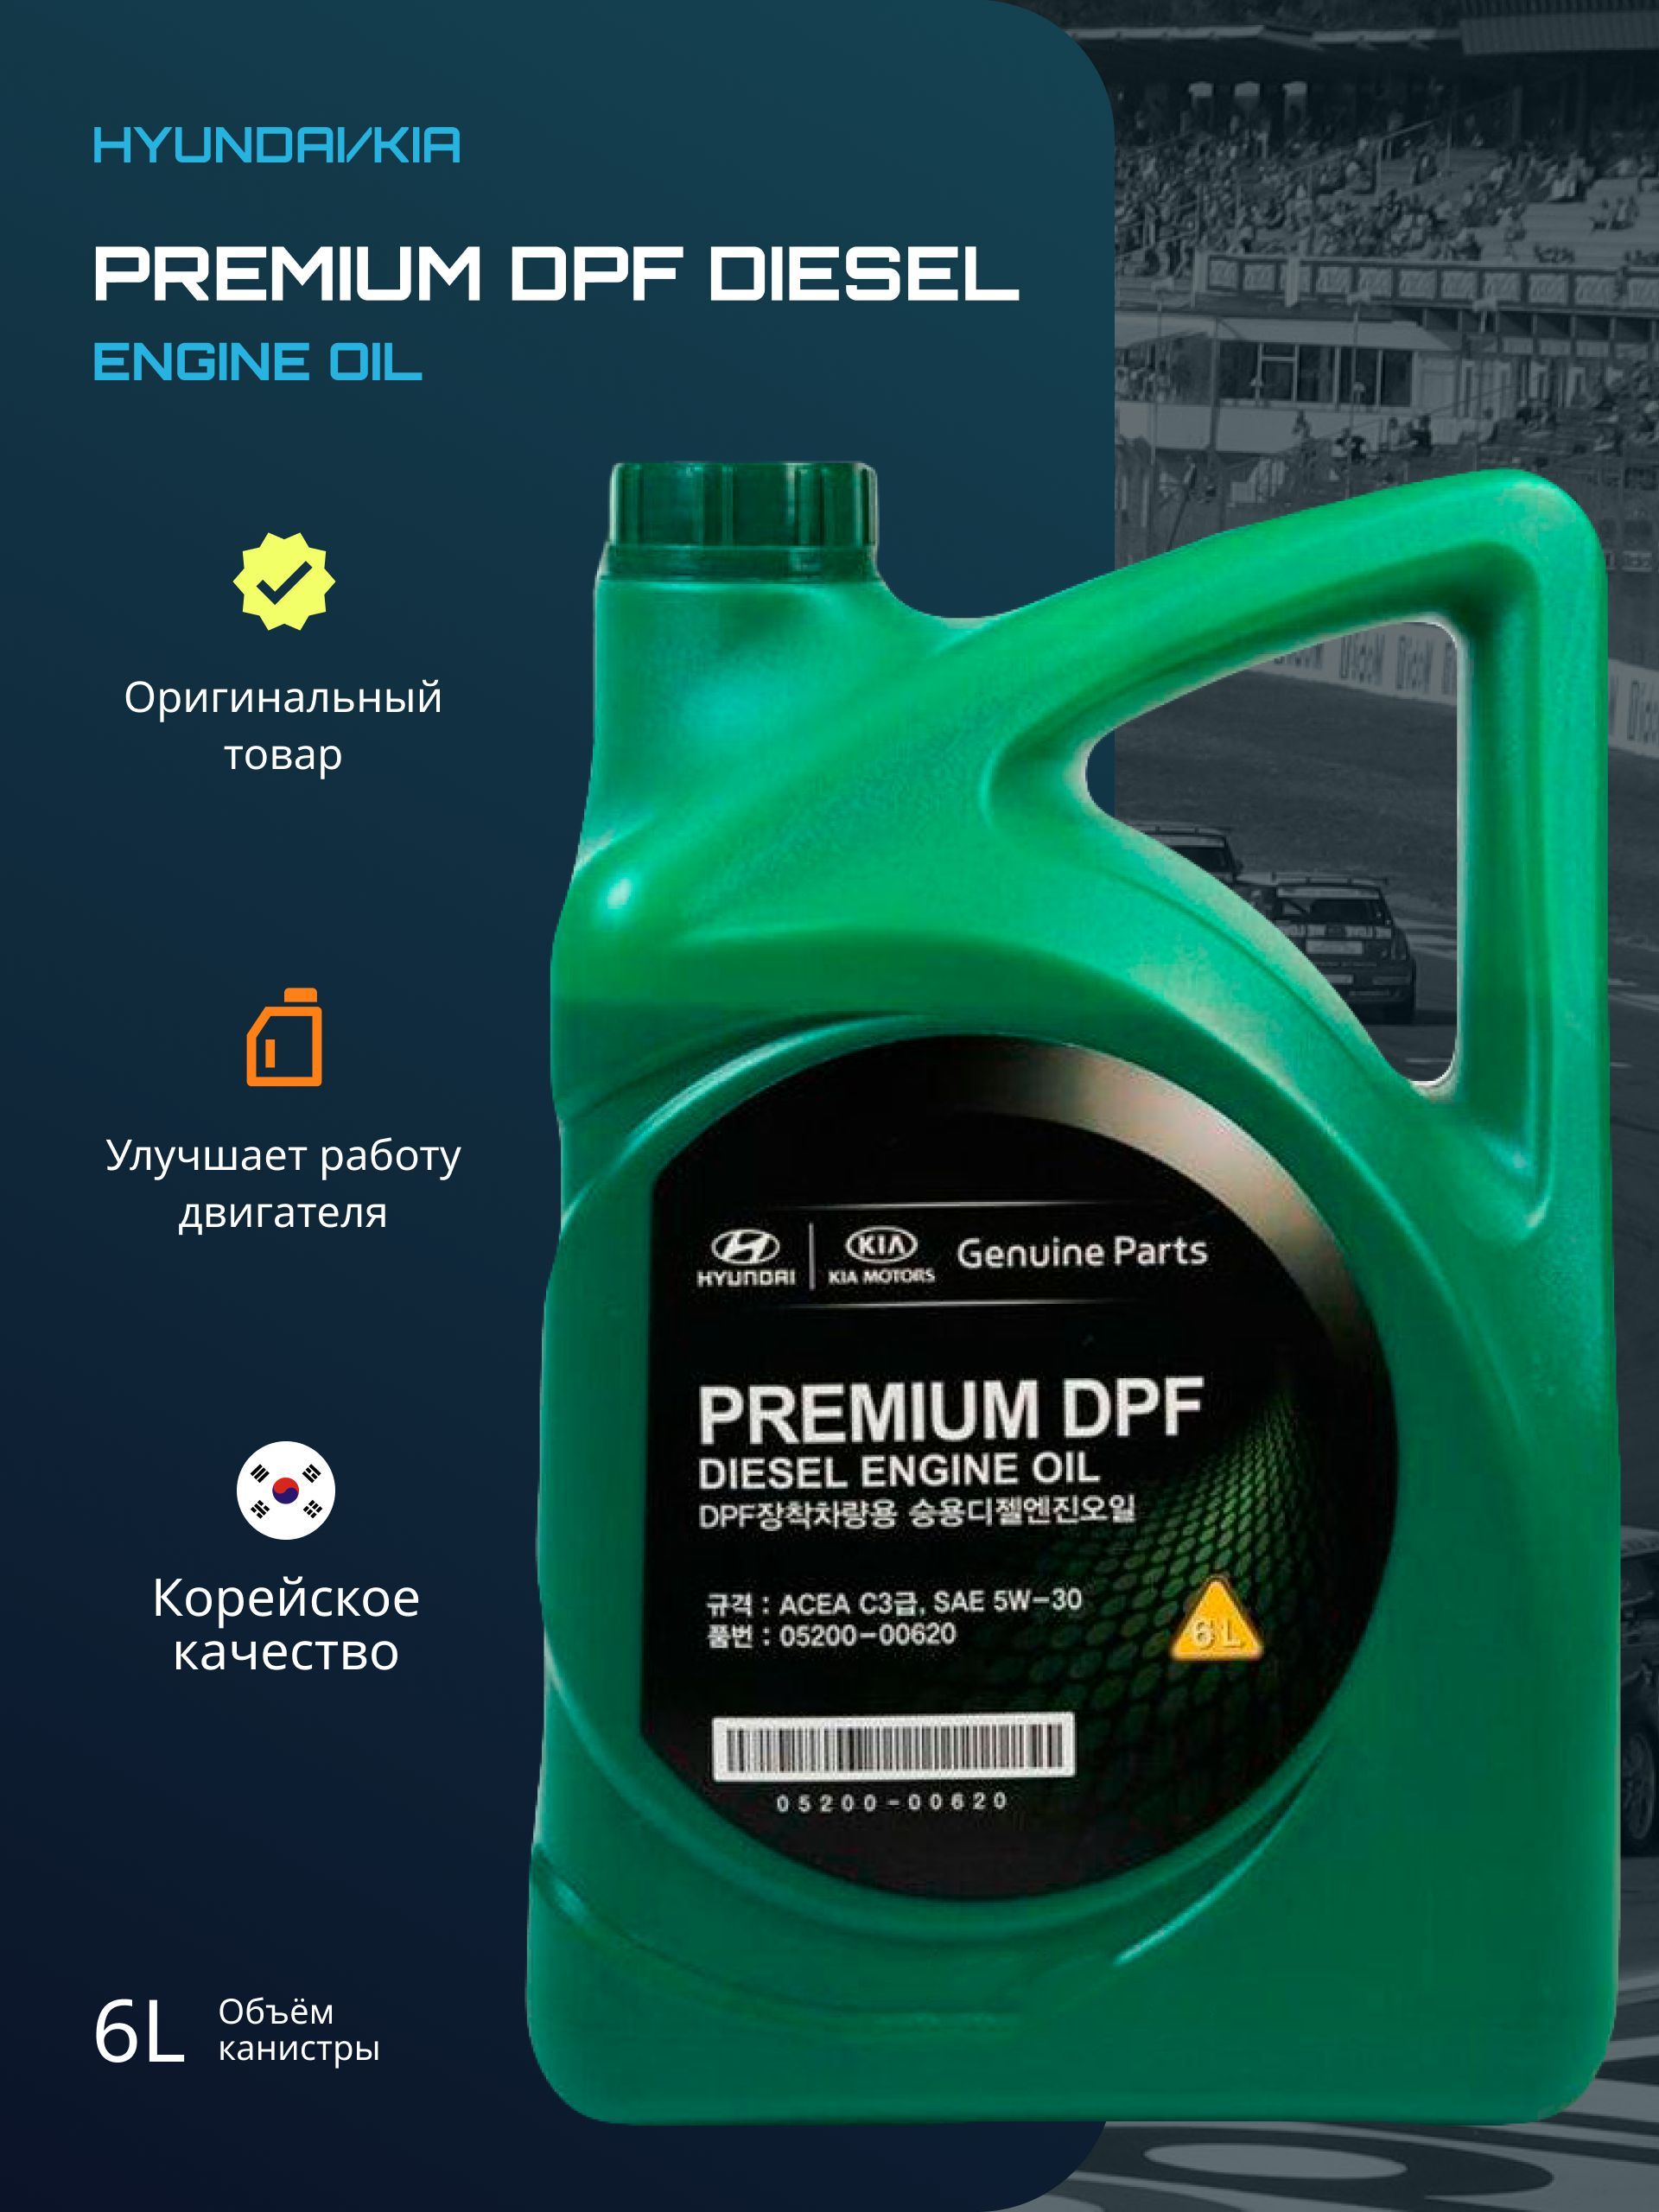 Масло моторное hyundai premium dpf diesel. Hyundai Premium DPF Diesel. 0520000620 Hyundai-Kia масло мотор. 6л. Prem. DPF Diesel 5w-30. Как расшифровать дату производства масла Kia Premium DPF Diesel.